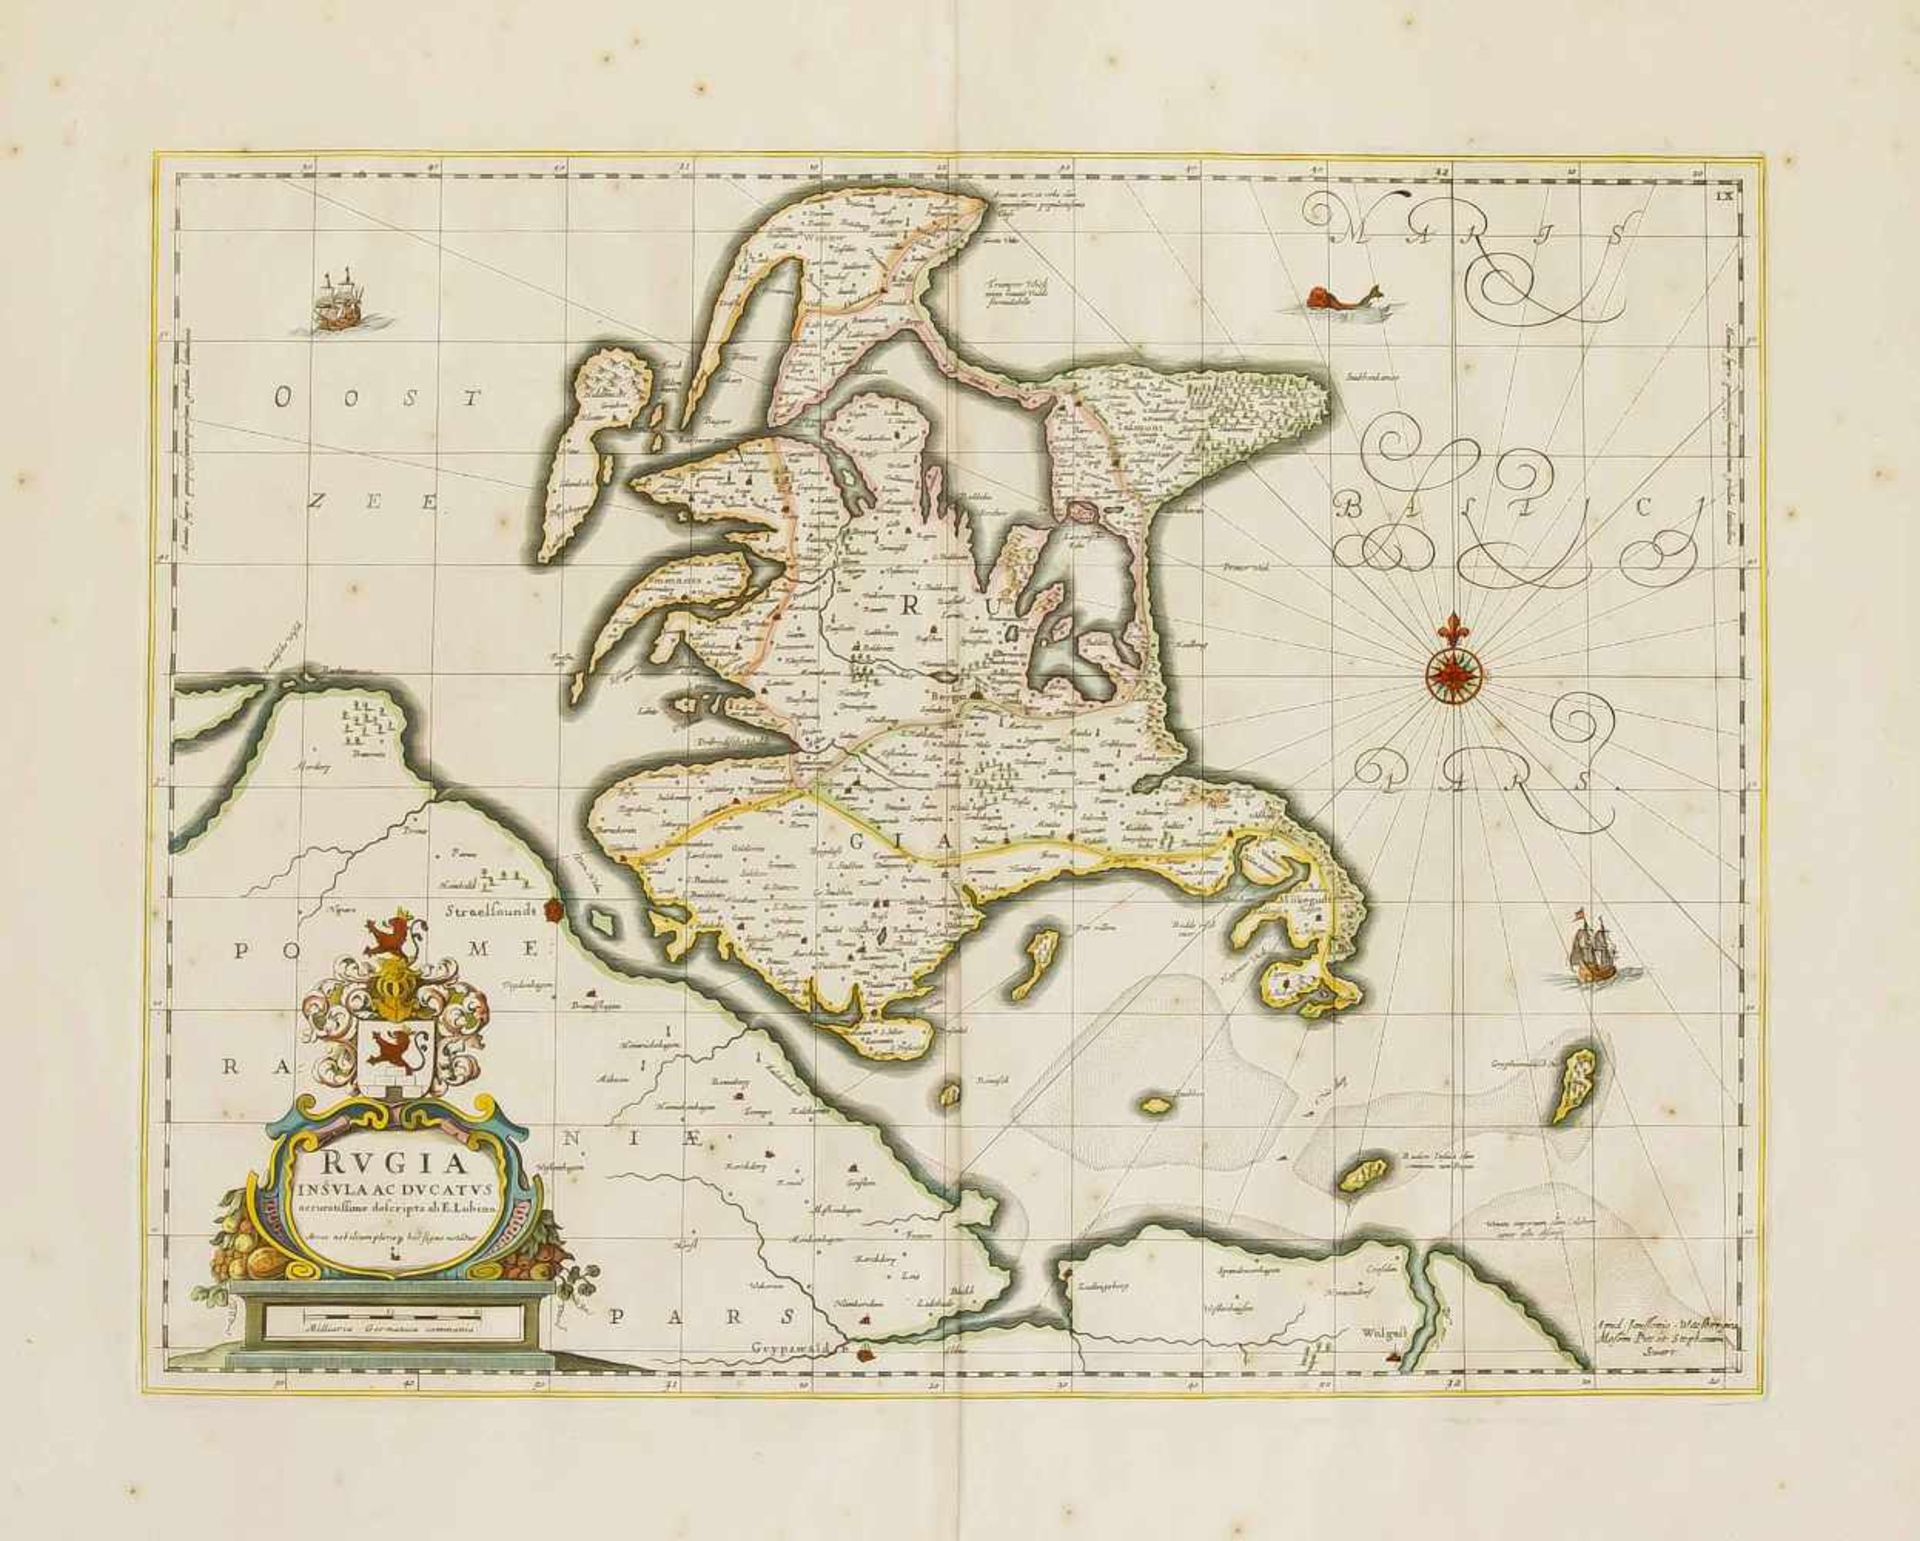 Zwei historische Karten des 17. Jh. von Litauen und Rügen, "Magni Ducatus Lithuaniae etRegionum